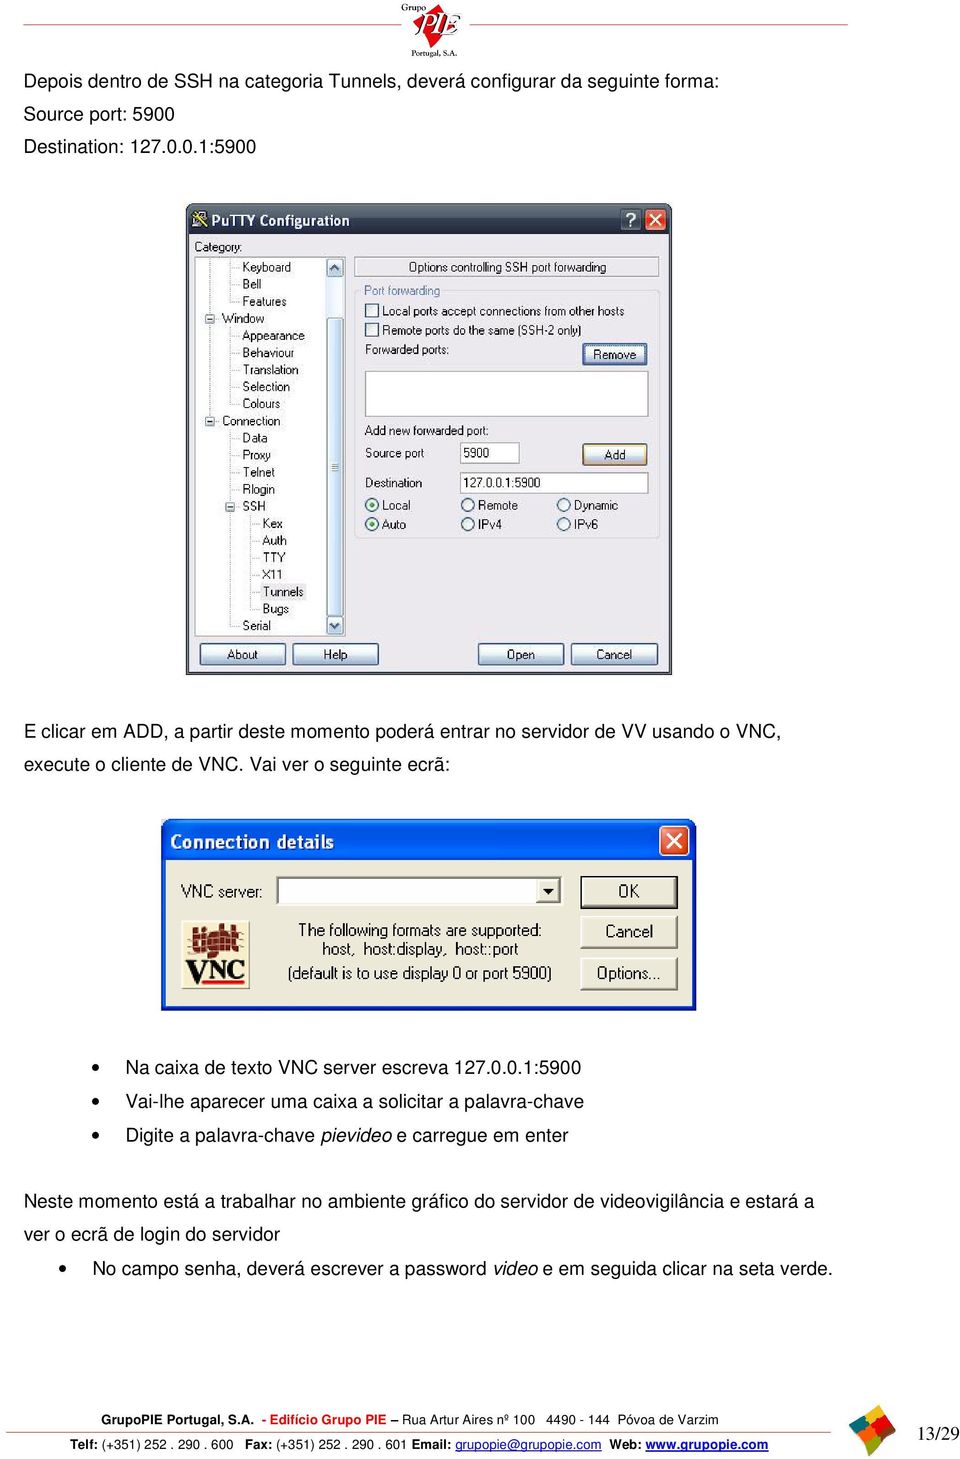 Vai ver o seguinte ecrã: Na caixa de texto VNC server escreva 127.0.